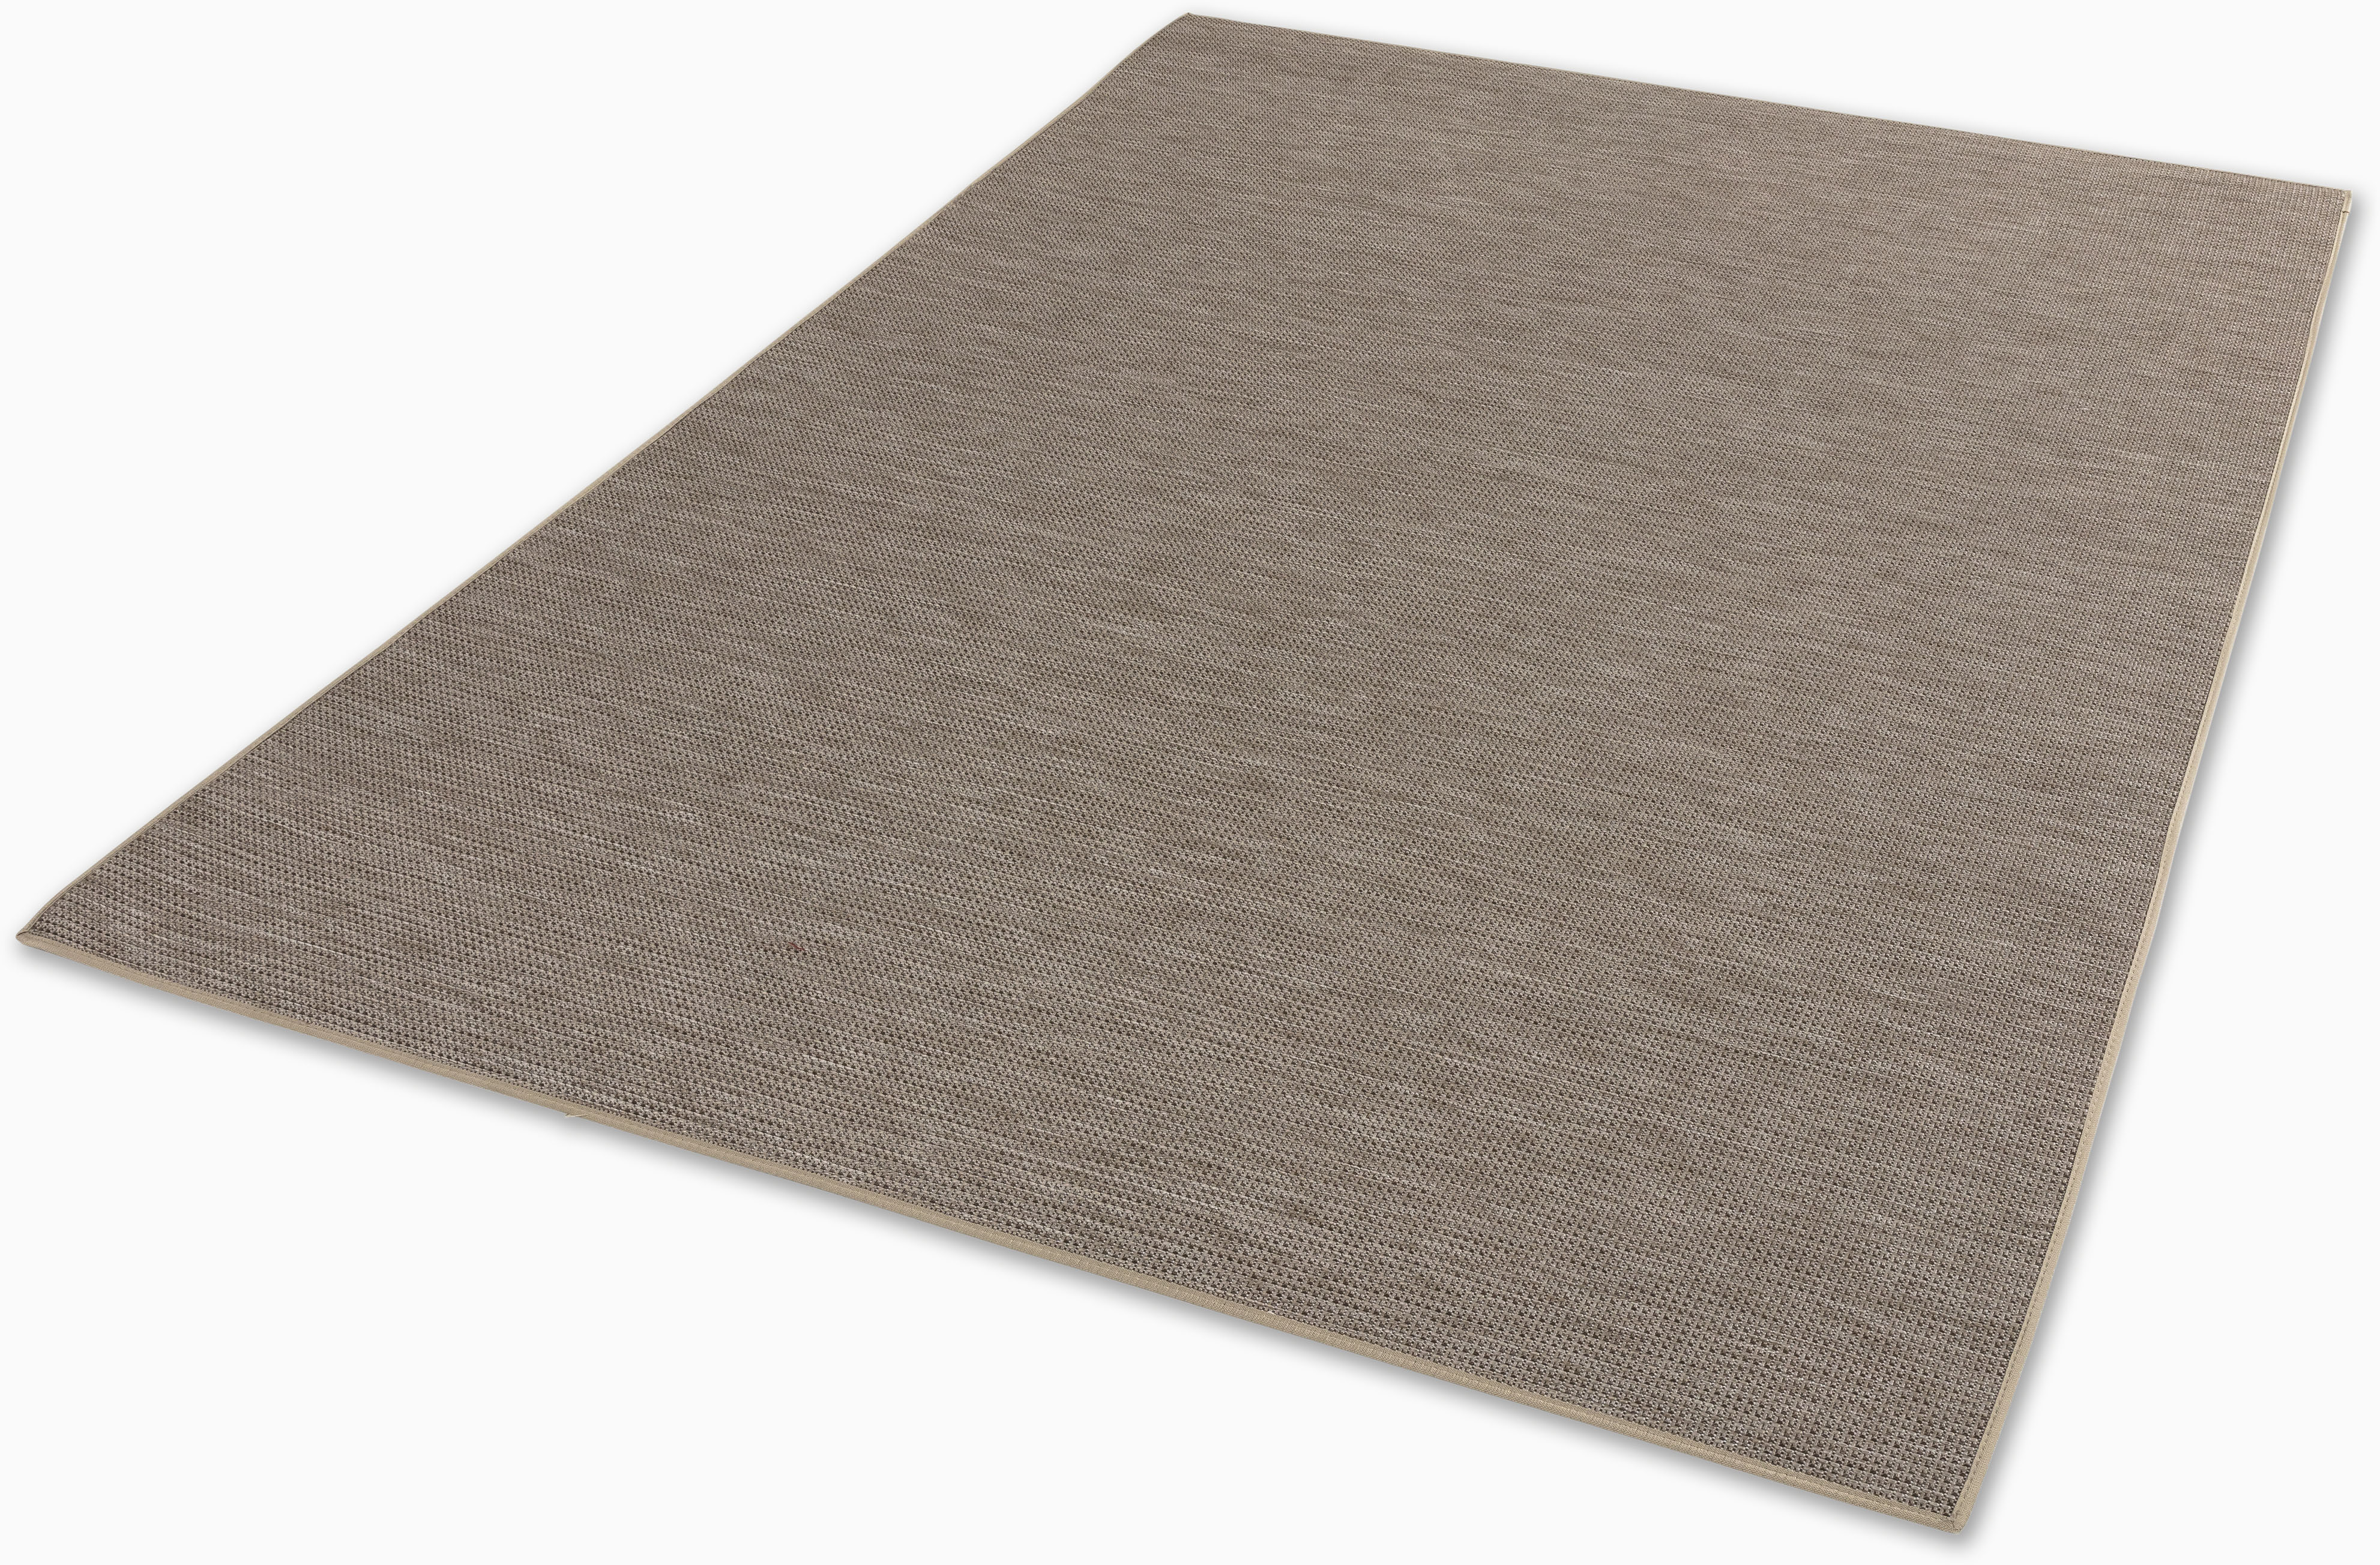 SCHÖNER WOHNEN-Kollektion Teppich "Parkland 6351 224", rechteckig, 5 mm Höhe, In- und Outdoor geeignet, eleganter Flachflorteppich